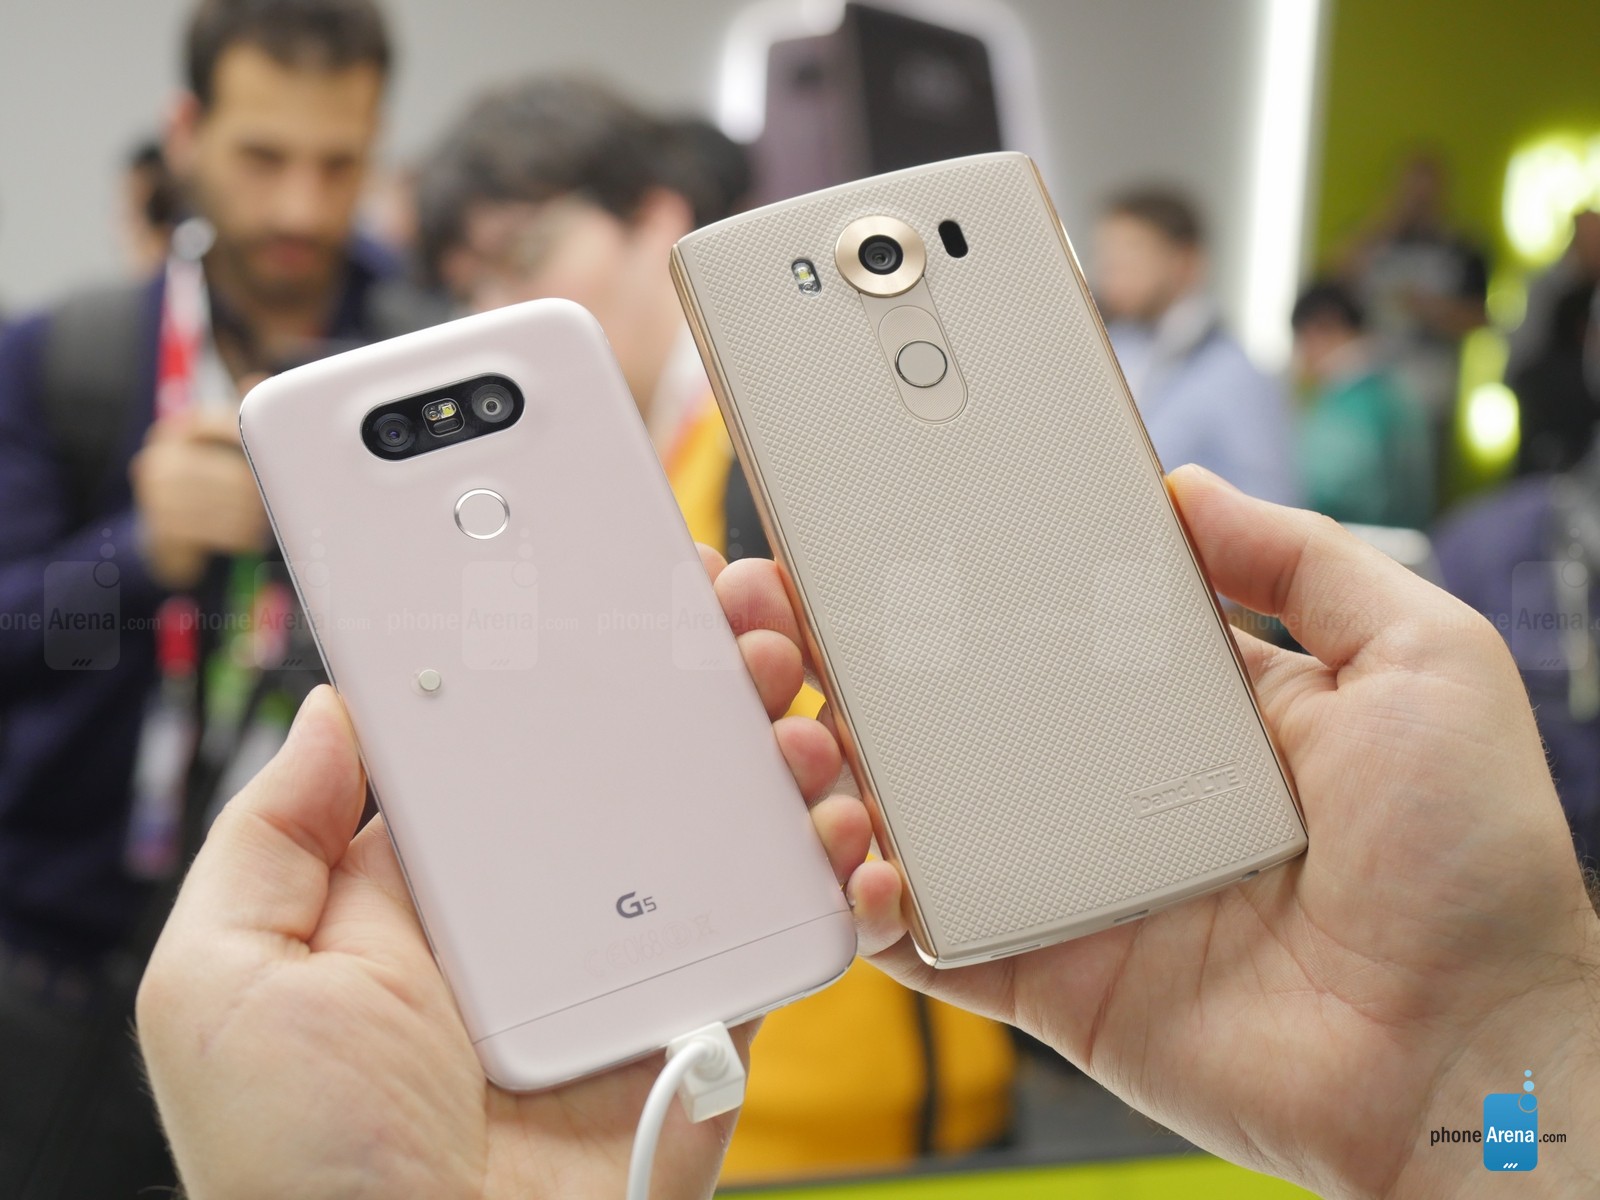 LG-G5-vs-LG-V10.jpg